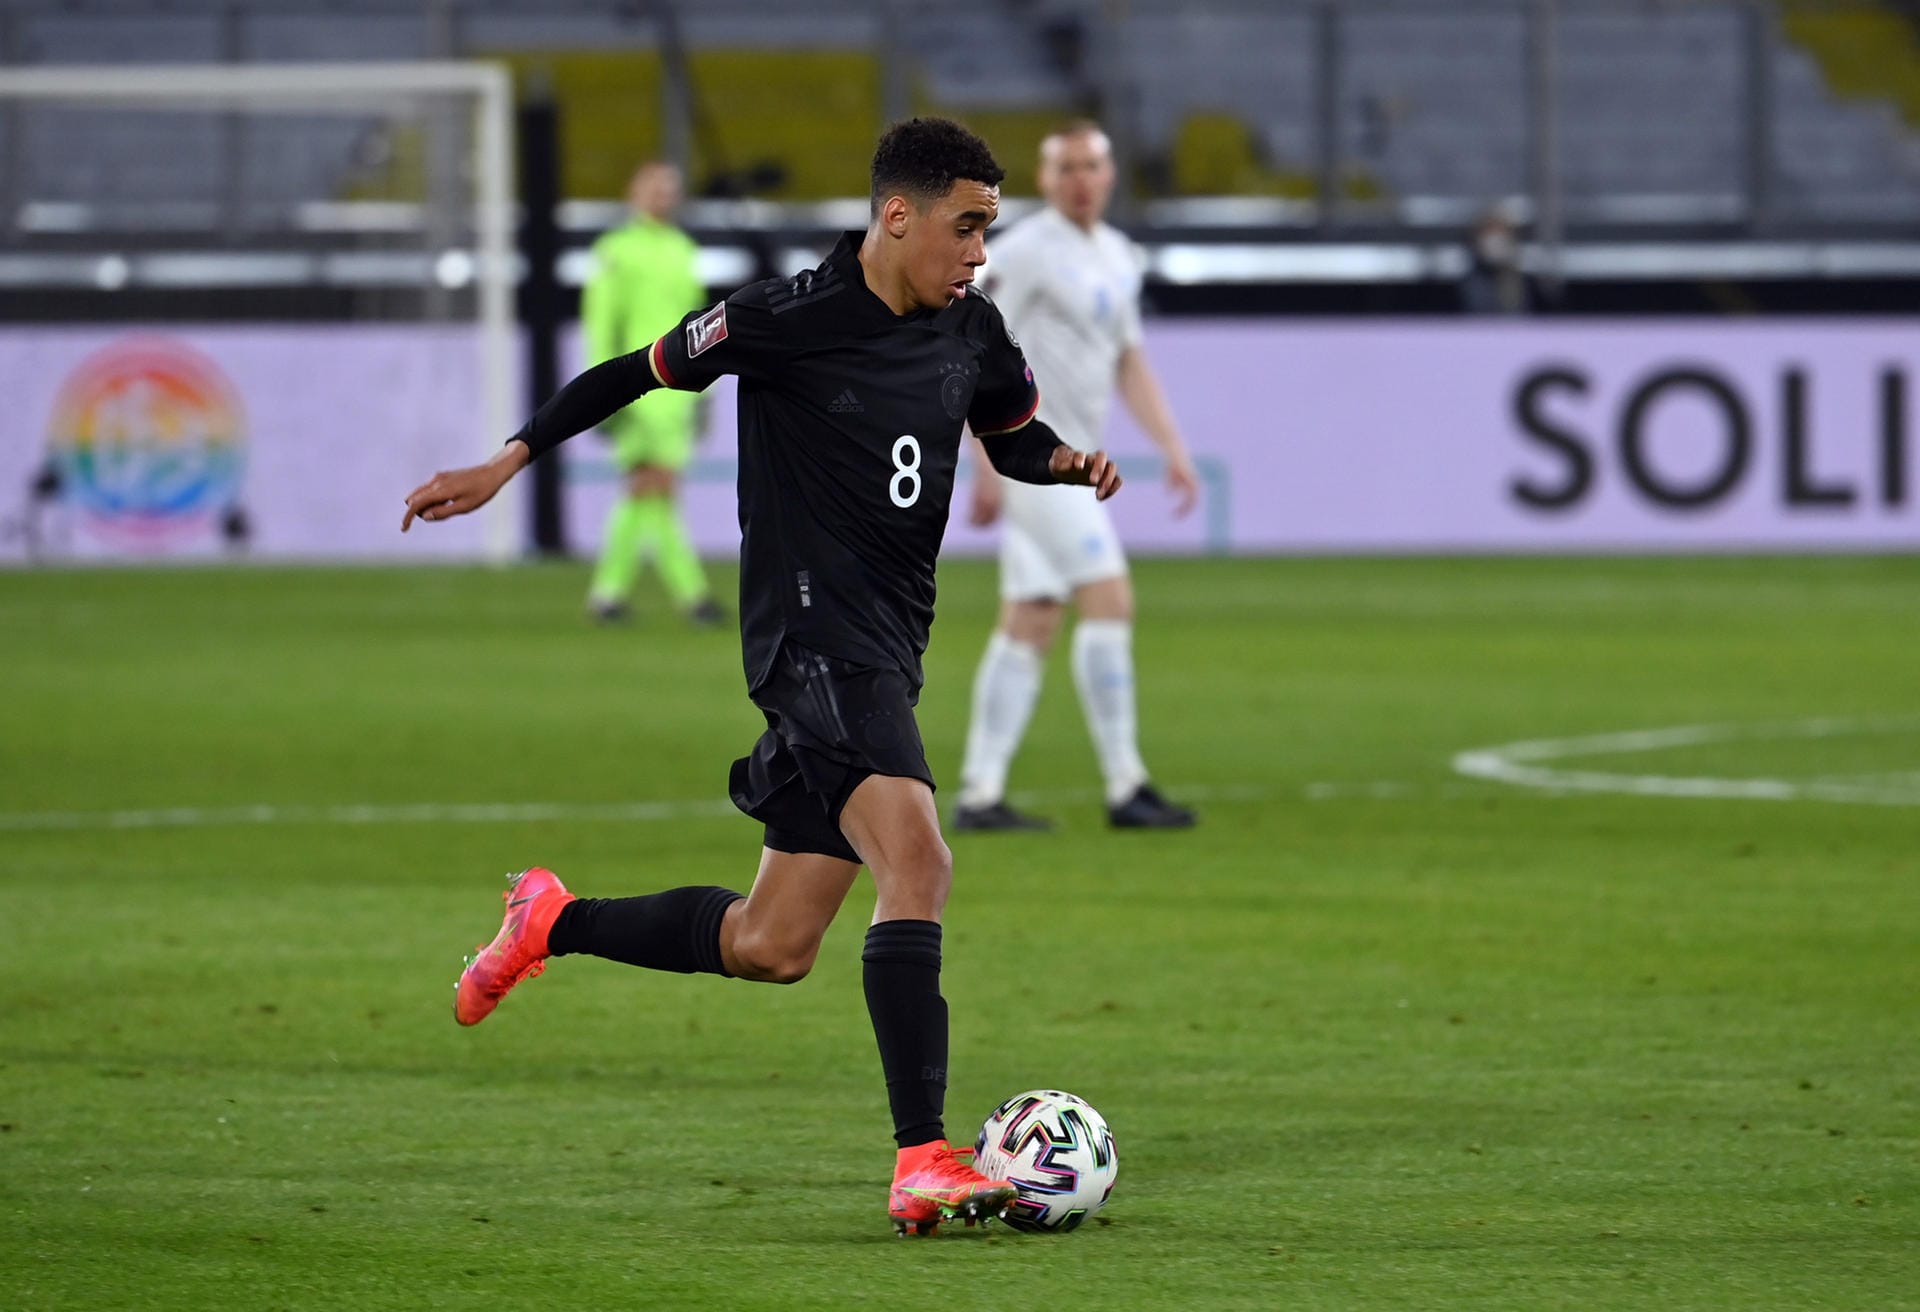 Jamal Musiala: Der 18-Jährige vom FC Bayern gab gegen Island sein Nationalmannschaftsdebüt. Kam in der 78. Minute für seinen Vereinskollegen Sané ins Spiel. Sicher eine tolle erste Erfahrung für die deutsche Nachwuchshoffnung. Keine Bewertung